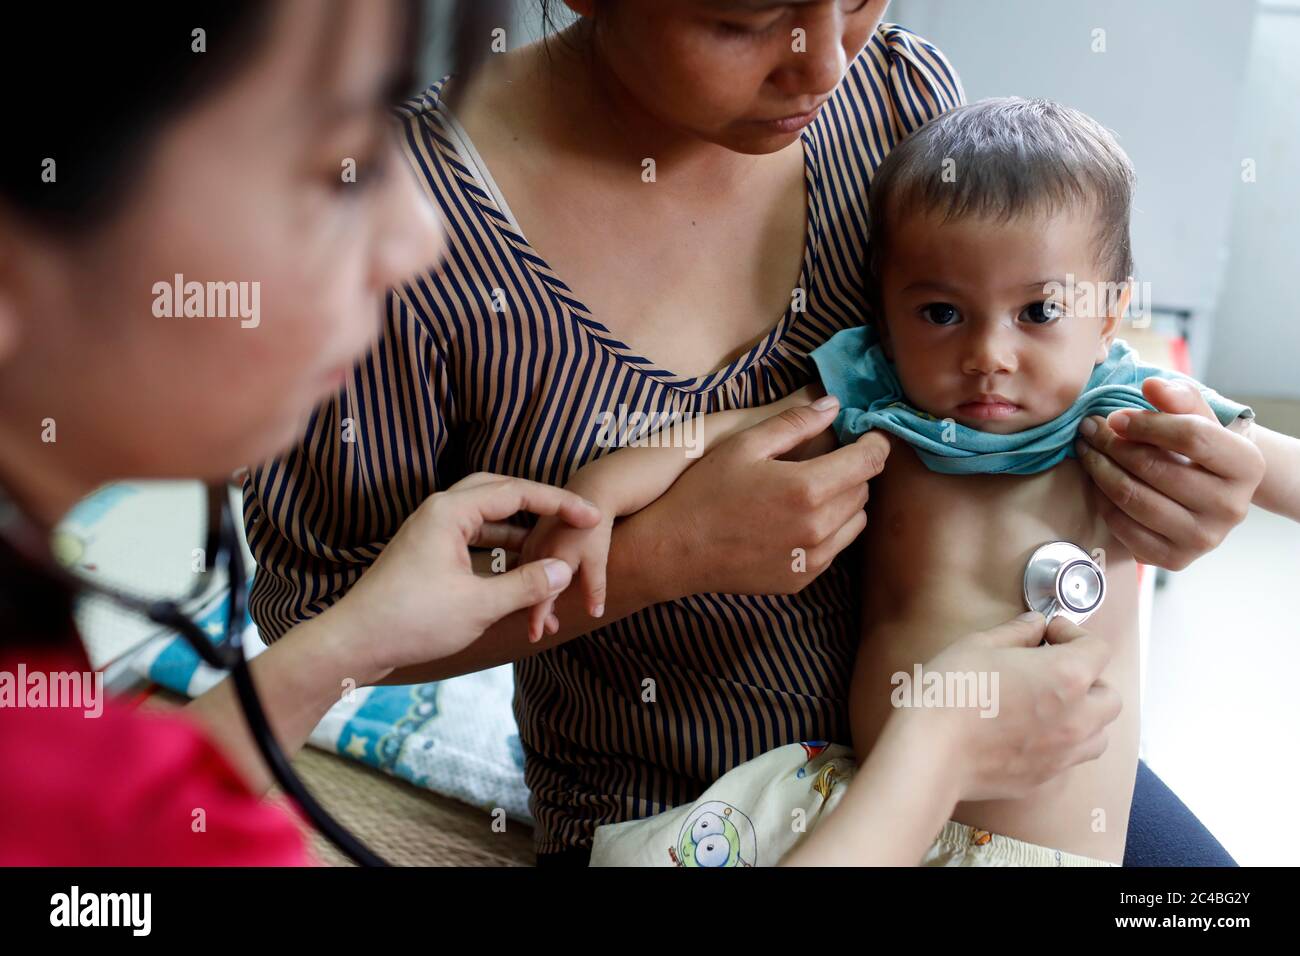 Französische NGO Chaine de l'Espoir. Kinderpavillon. Kind, das an Herzerkrankungen leidet. Ärztliche Beratung. Ho Chi Minh Stadt. Vietnam. Stockfoto